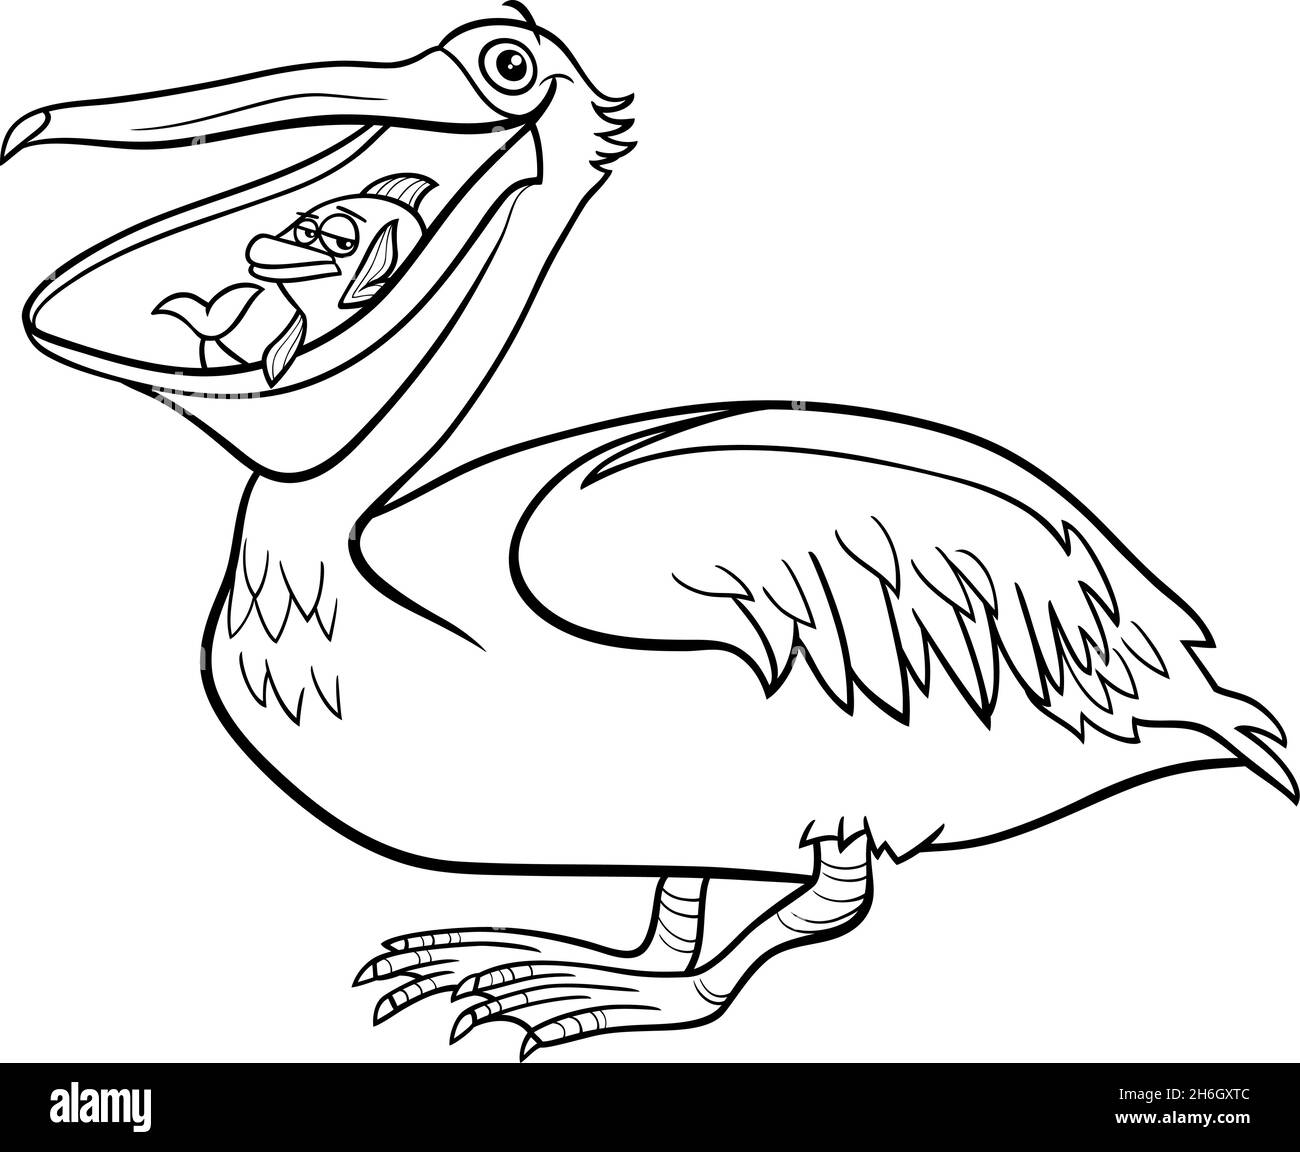 Dessin animé noir et blanc illustration de caractère animal d'oiseau pélican drôle avec page de livre de coloriage de poisson Illustration de Vecteur